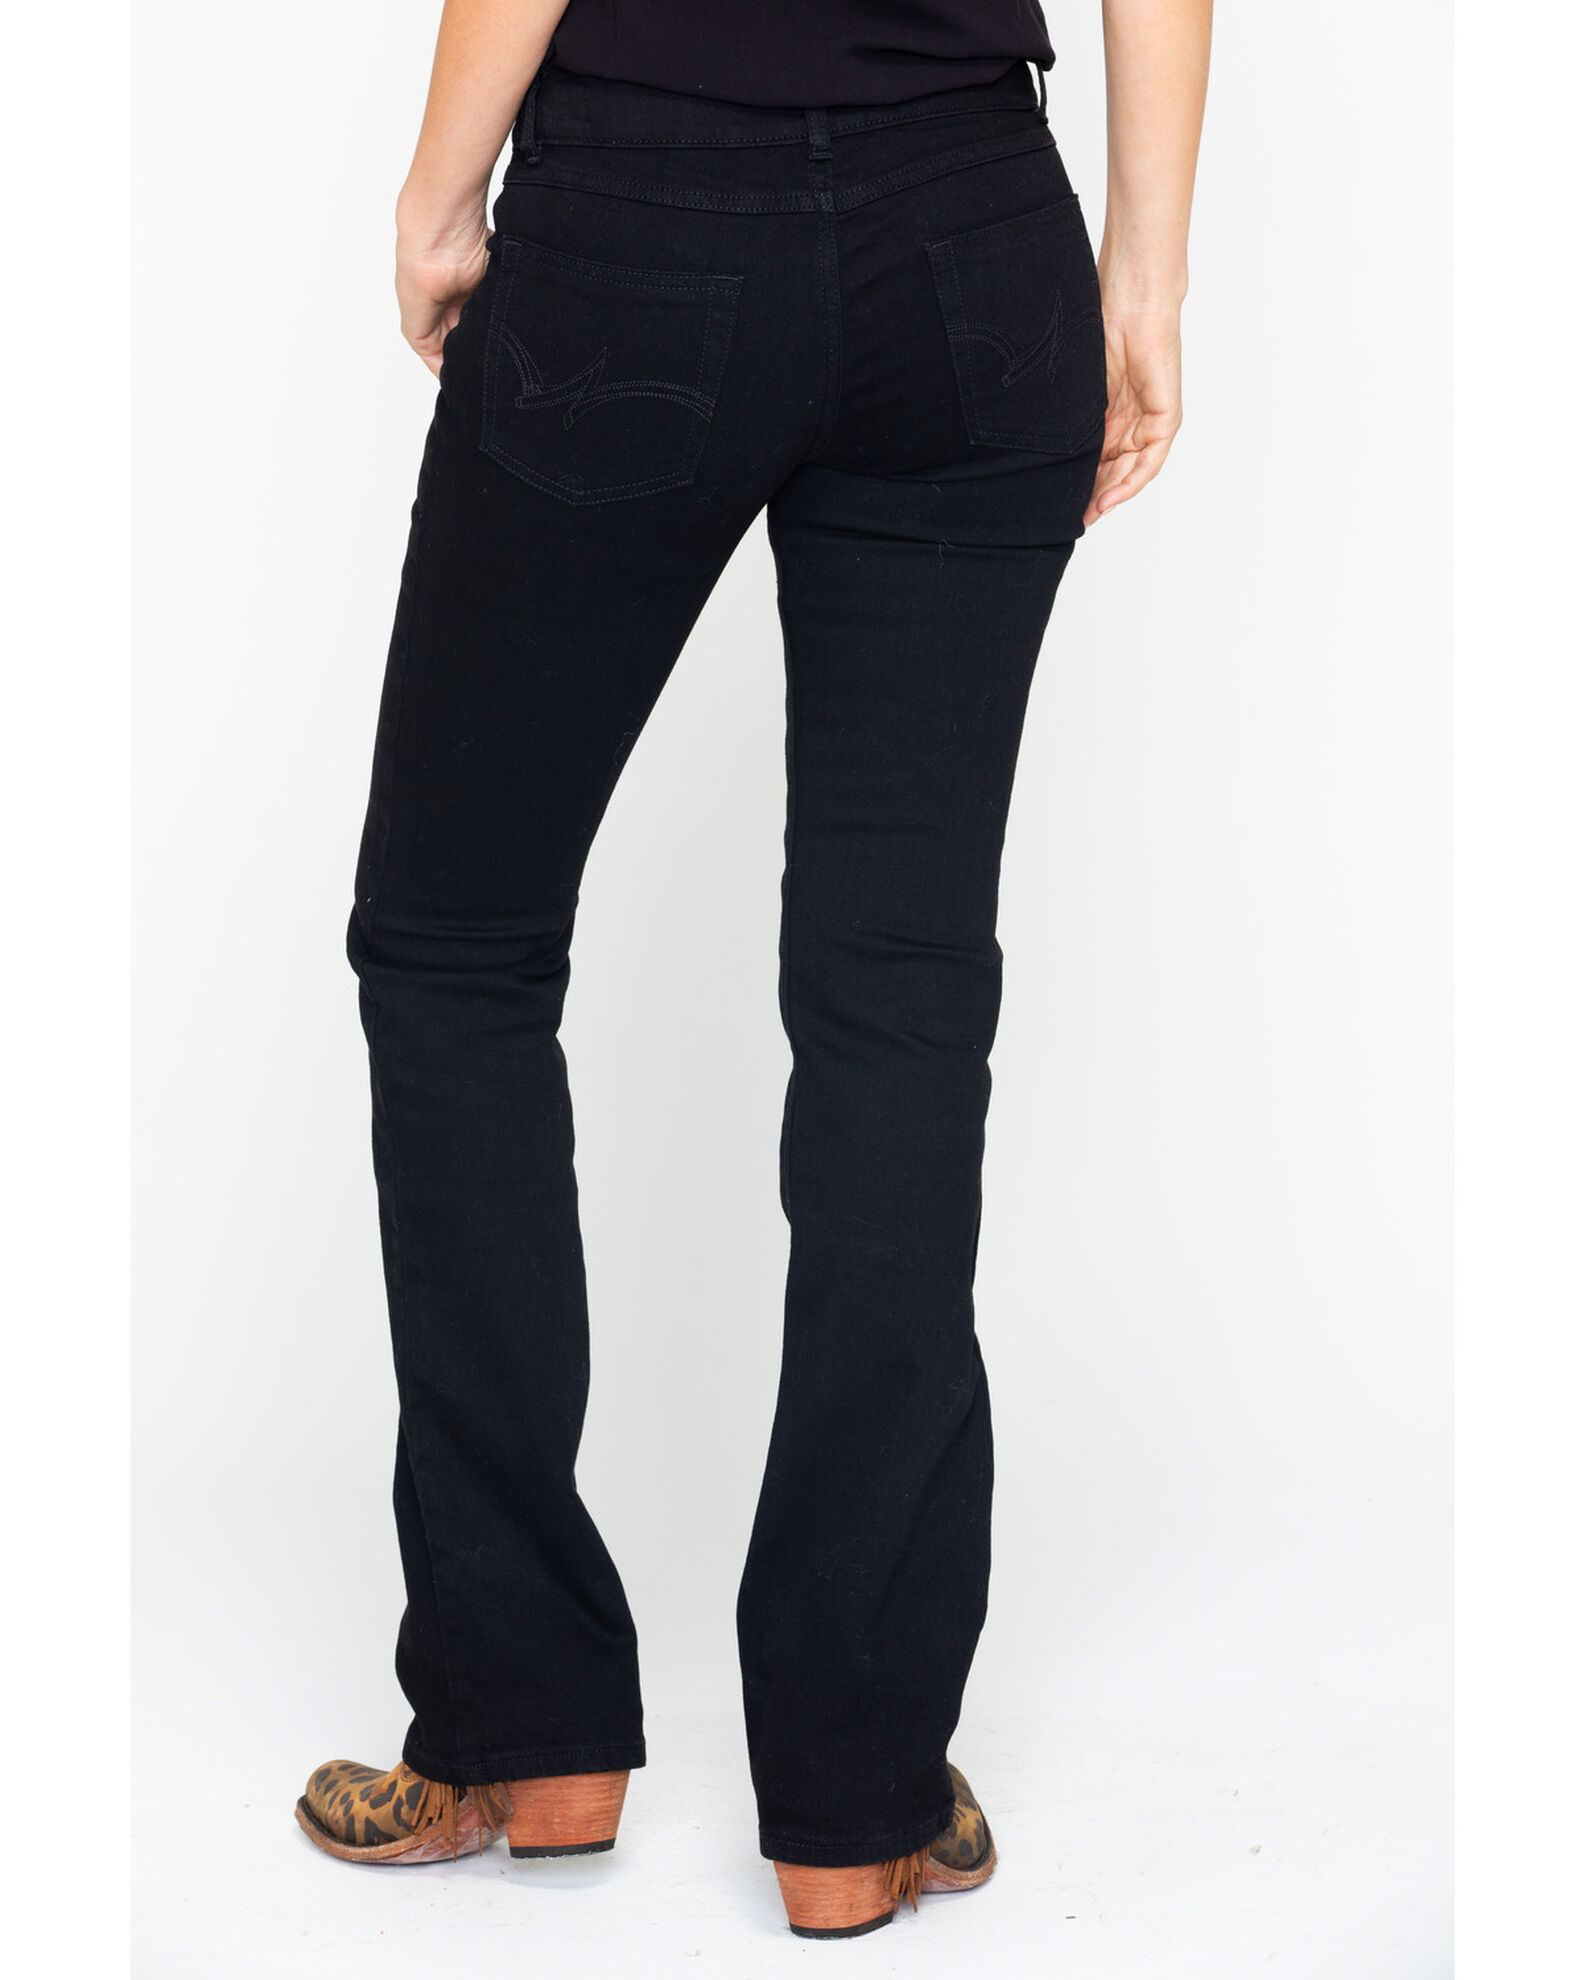 Shyanne Women's Medium Bootcut Jeans